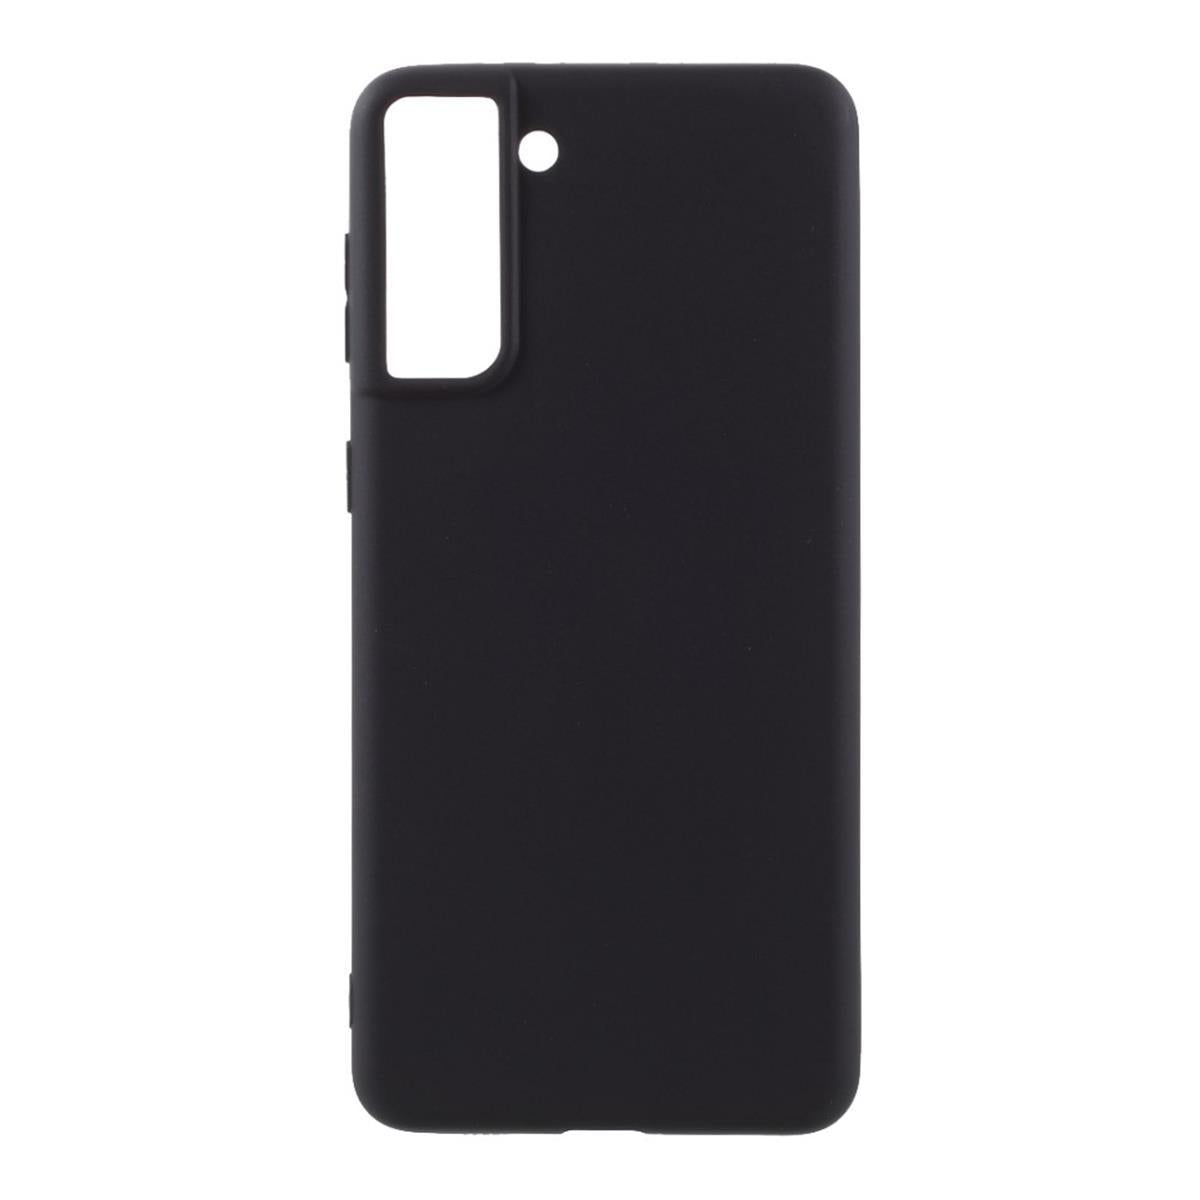 Hülle für Samsung Galaxy S21+ (Plus) Handyhülle Silikon Case Cover Bumper Matt Schwarz